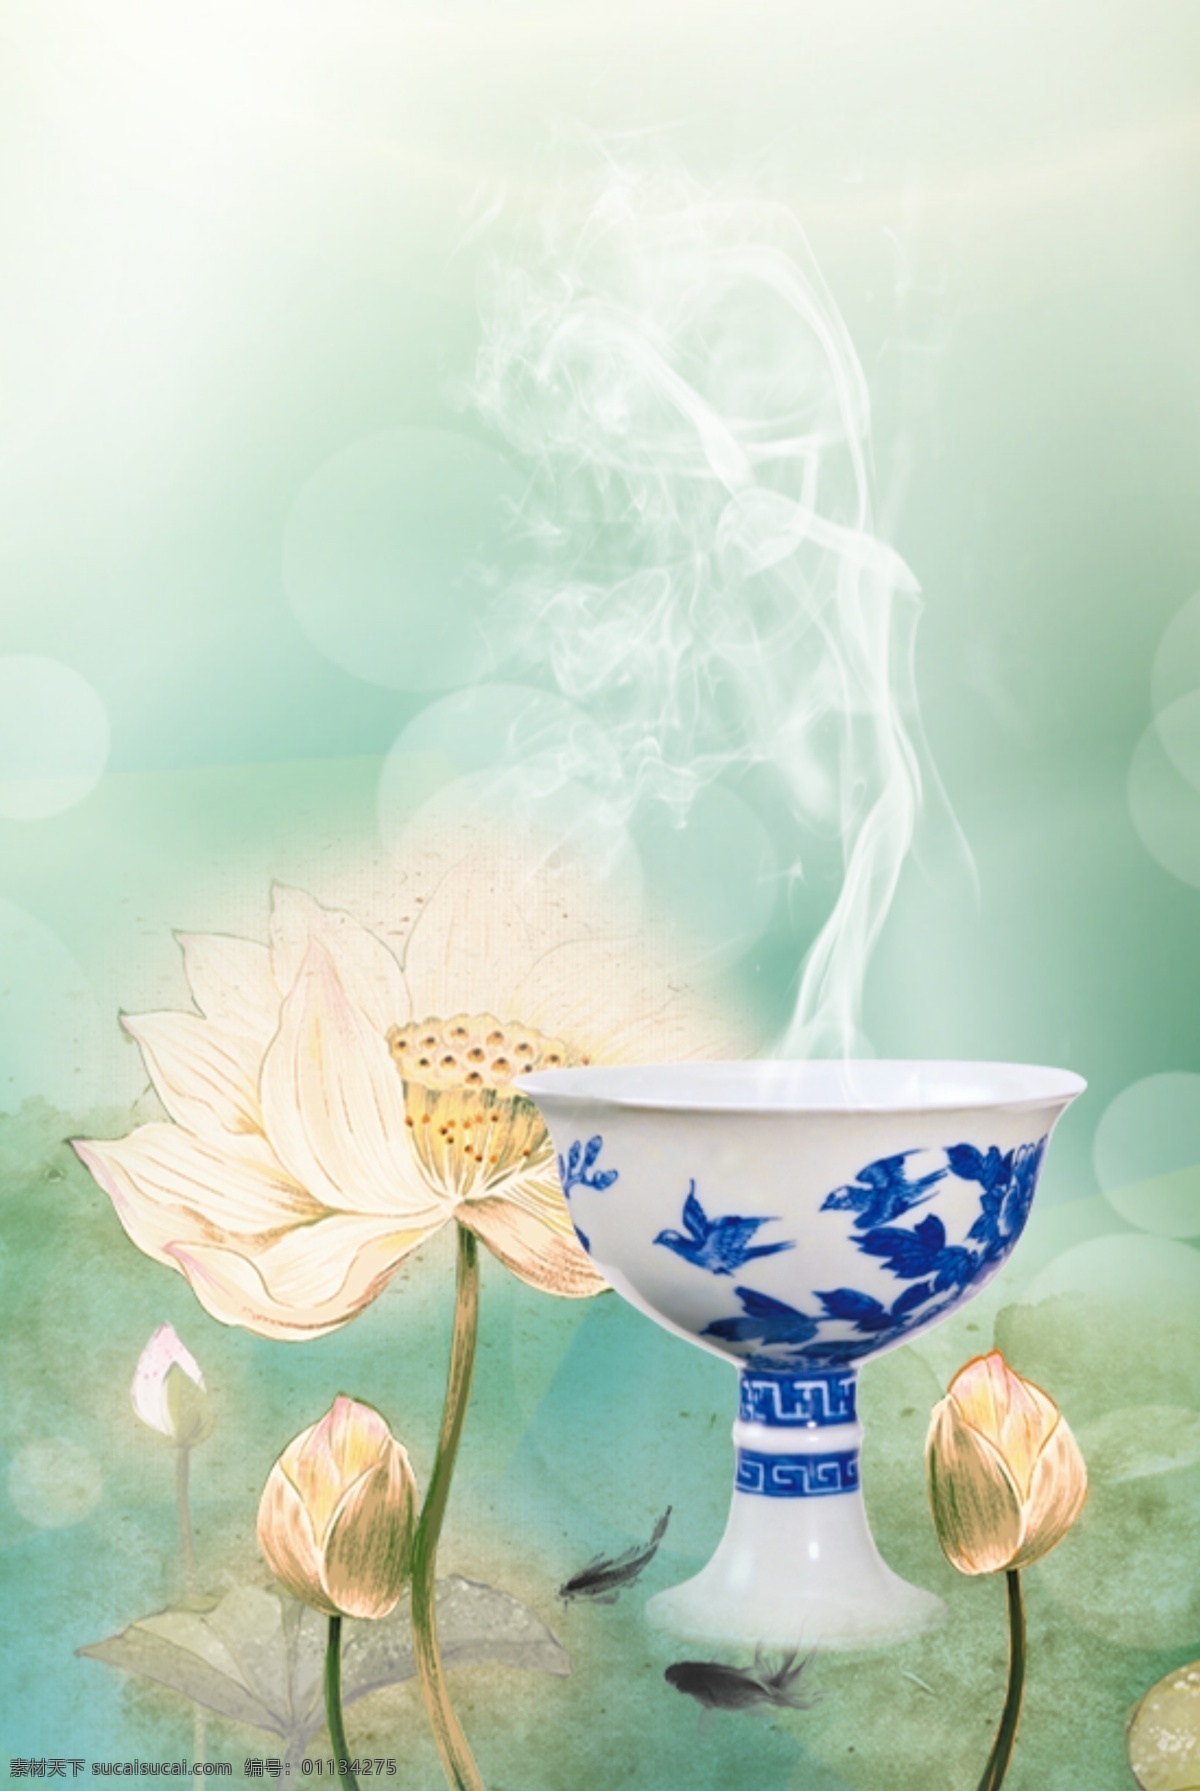 传统文化素材 中国风 传统文化 莲花 白色